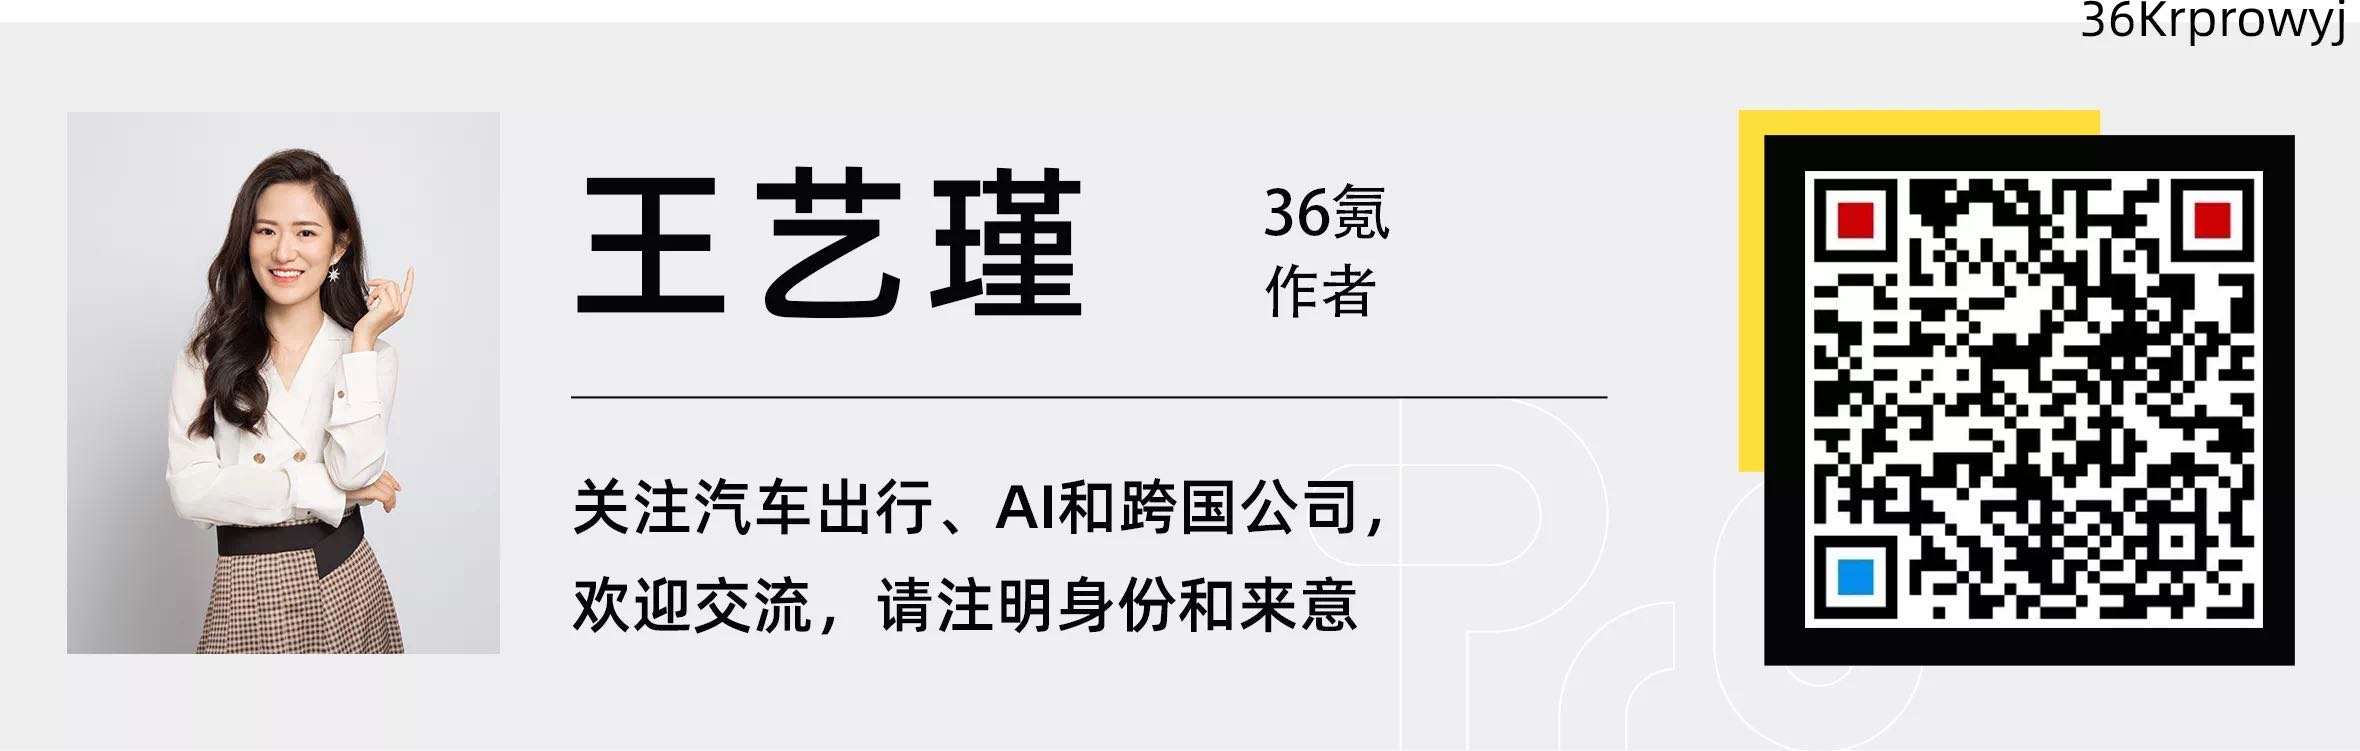 「元戎启行」向公众开放运营20辆RoboTaxi，深圳市民即日起可预约乘坐